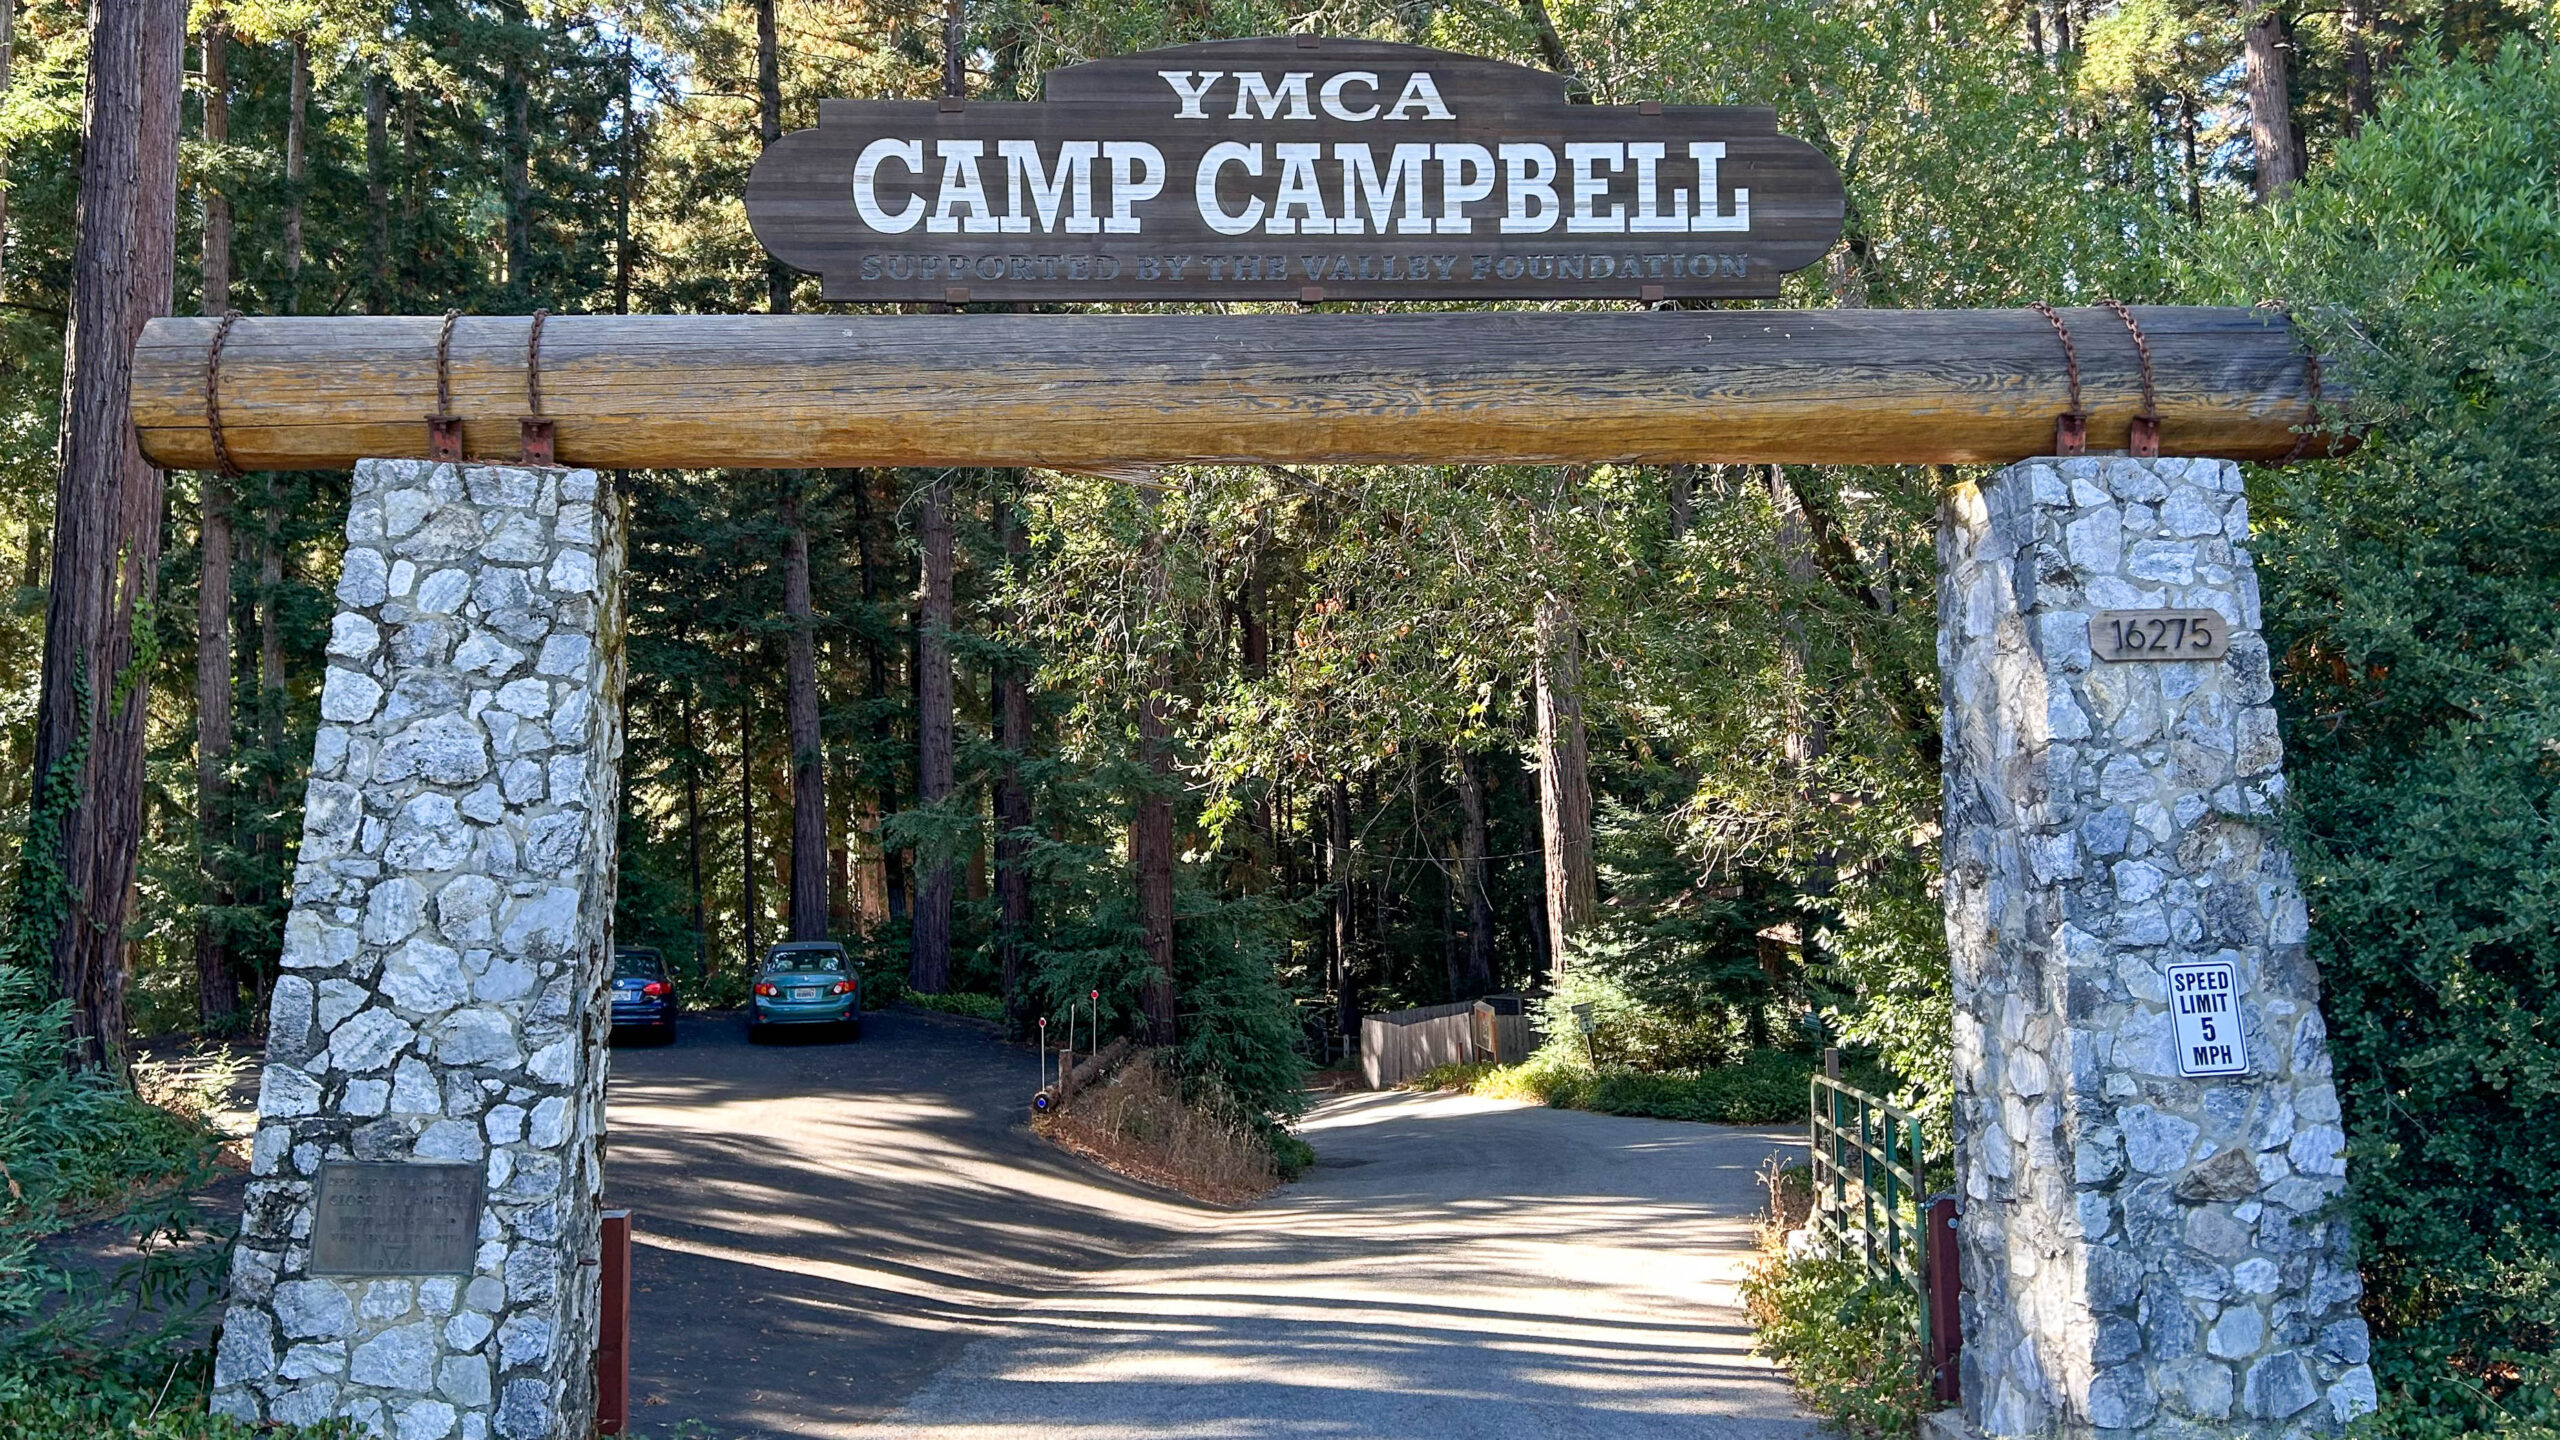 La entrada al Campamento YMCA Campbell en Boulder Creek es un arco de piedra y madera. Un camino serpentea hacia el bosque de secuoyas.